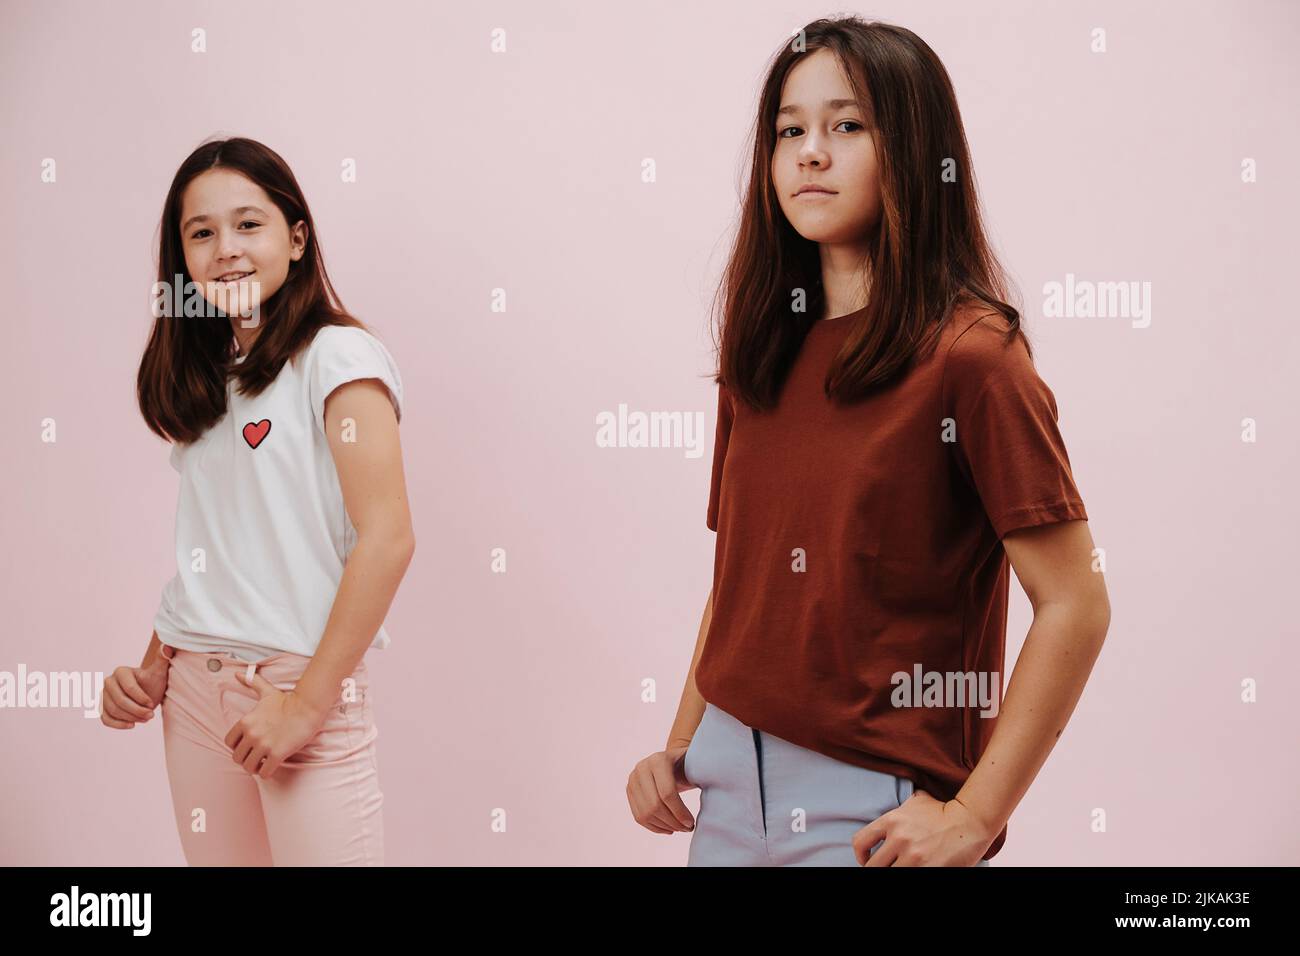 Portrait de deux filles jumelles confiantes vêtues de différentes couleurs posant Banque D'Images